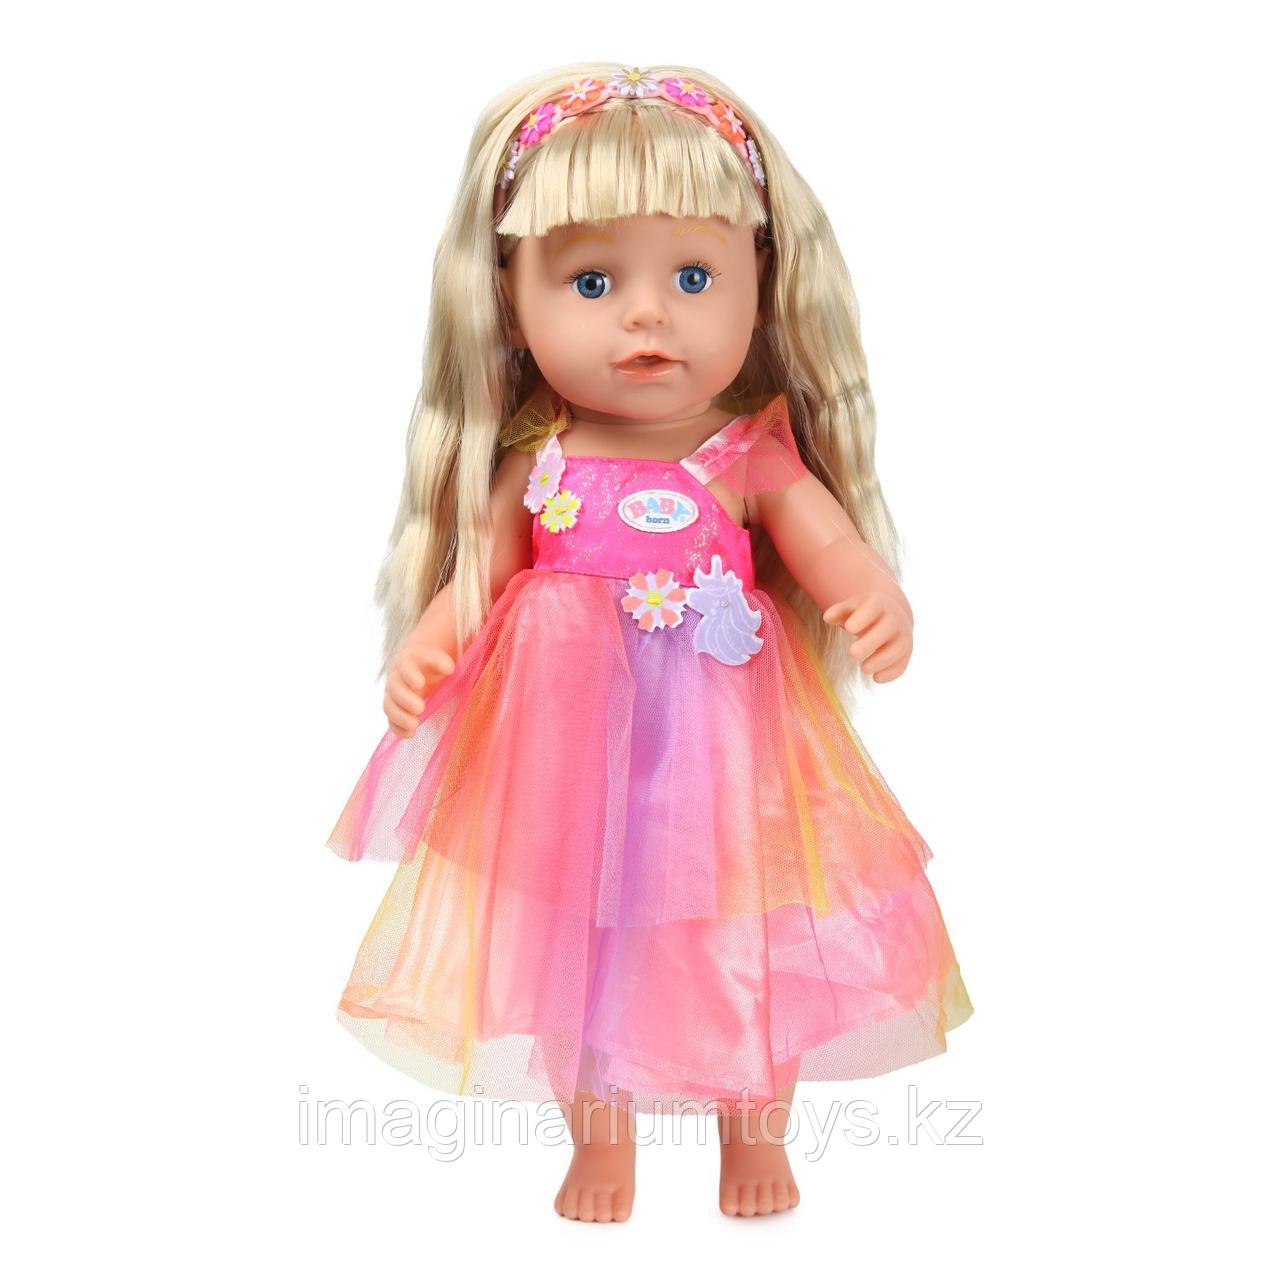 Кукла Baby Born сестричка Фея в платье единорога 43 см, фото 1